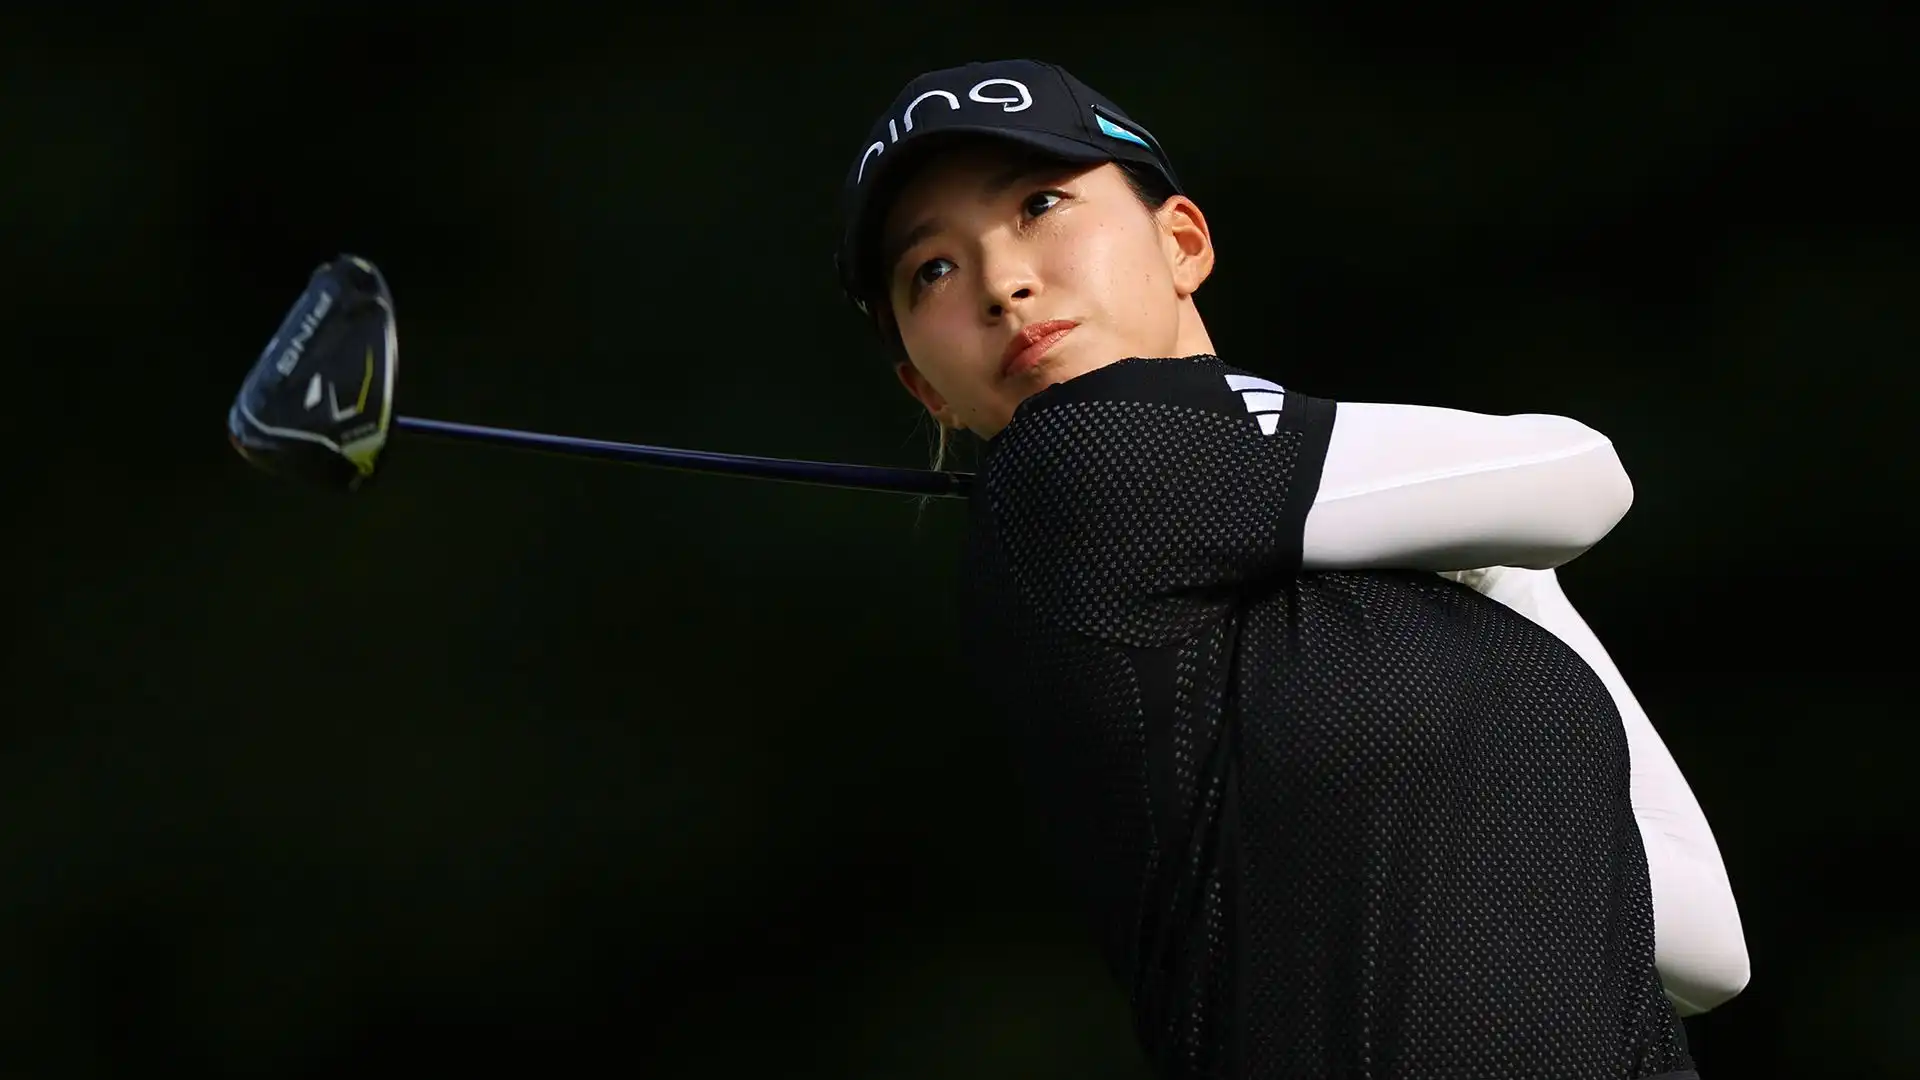 Hinako Shibuno (Golf): guadagni annui stimati 2,3 milioni di dollari